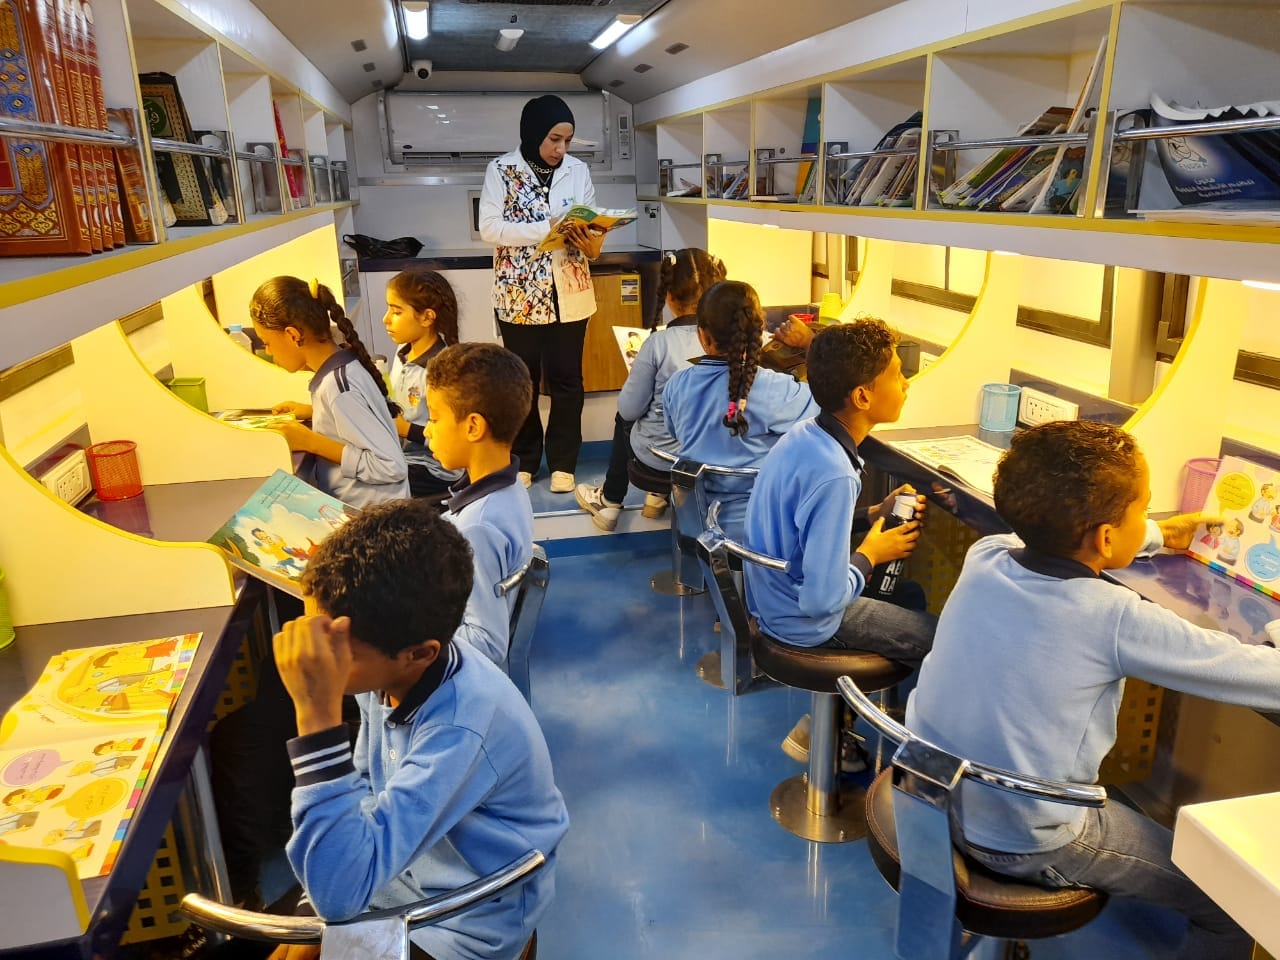 فعاليات المكتبة الثقافية المتنقلة لطلبة المدرسة بالأقصر